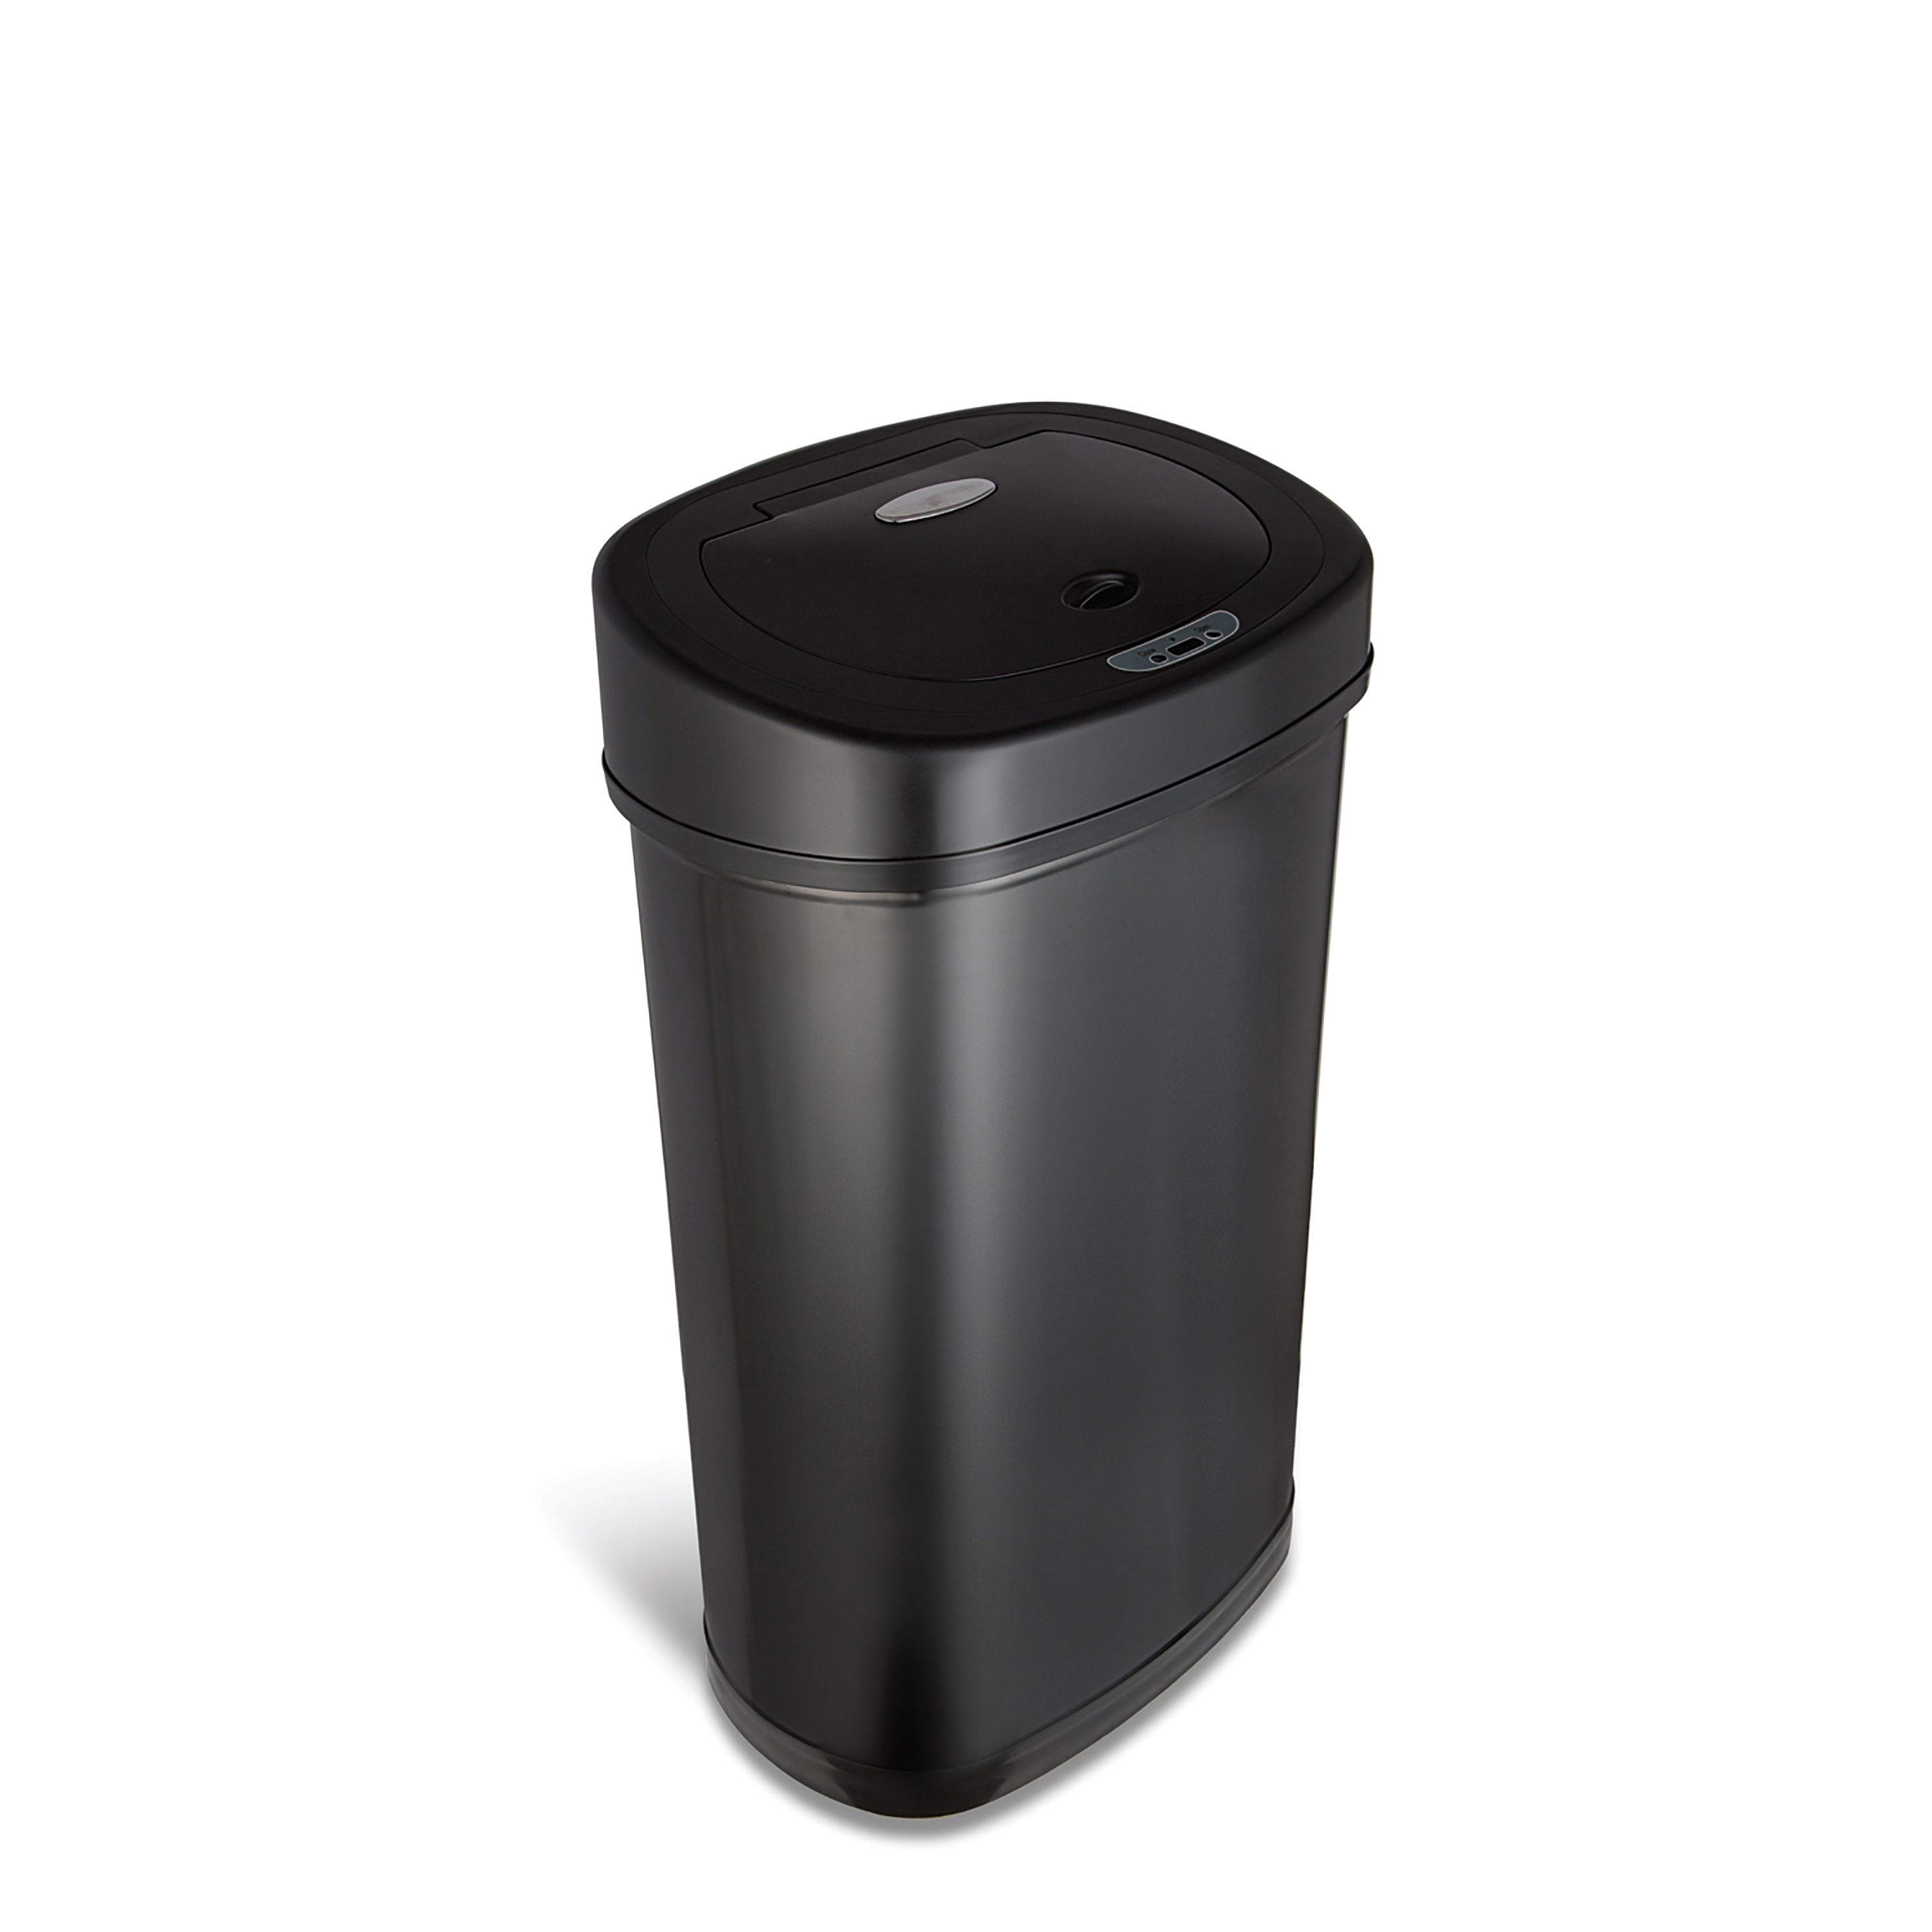 Nine Stars Motion Sensor Oval Kitchen Garbage Can, Fingerprint-Resistant Stainless Steel, 13.2 gal, Matte Black - image 2 of 9